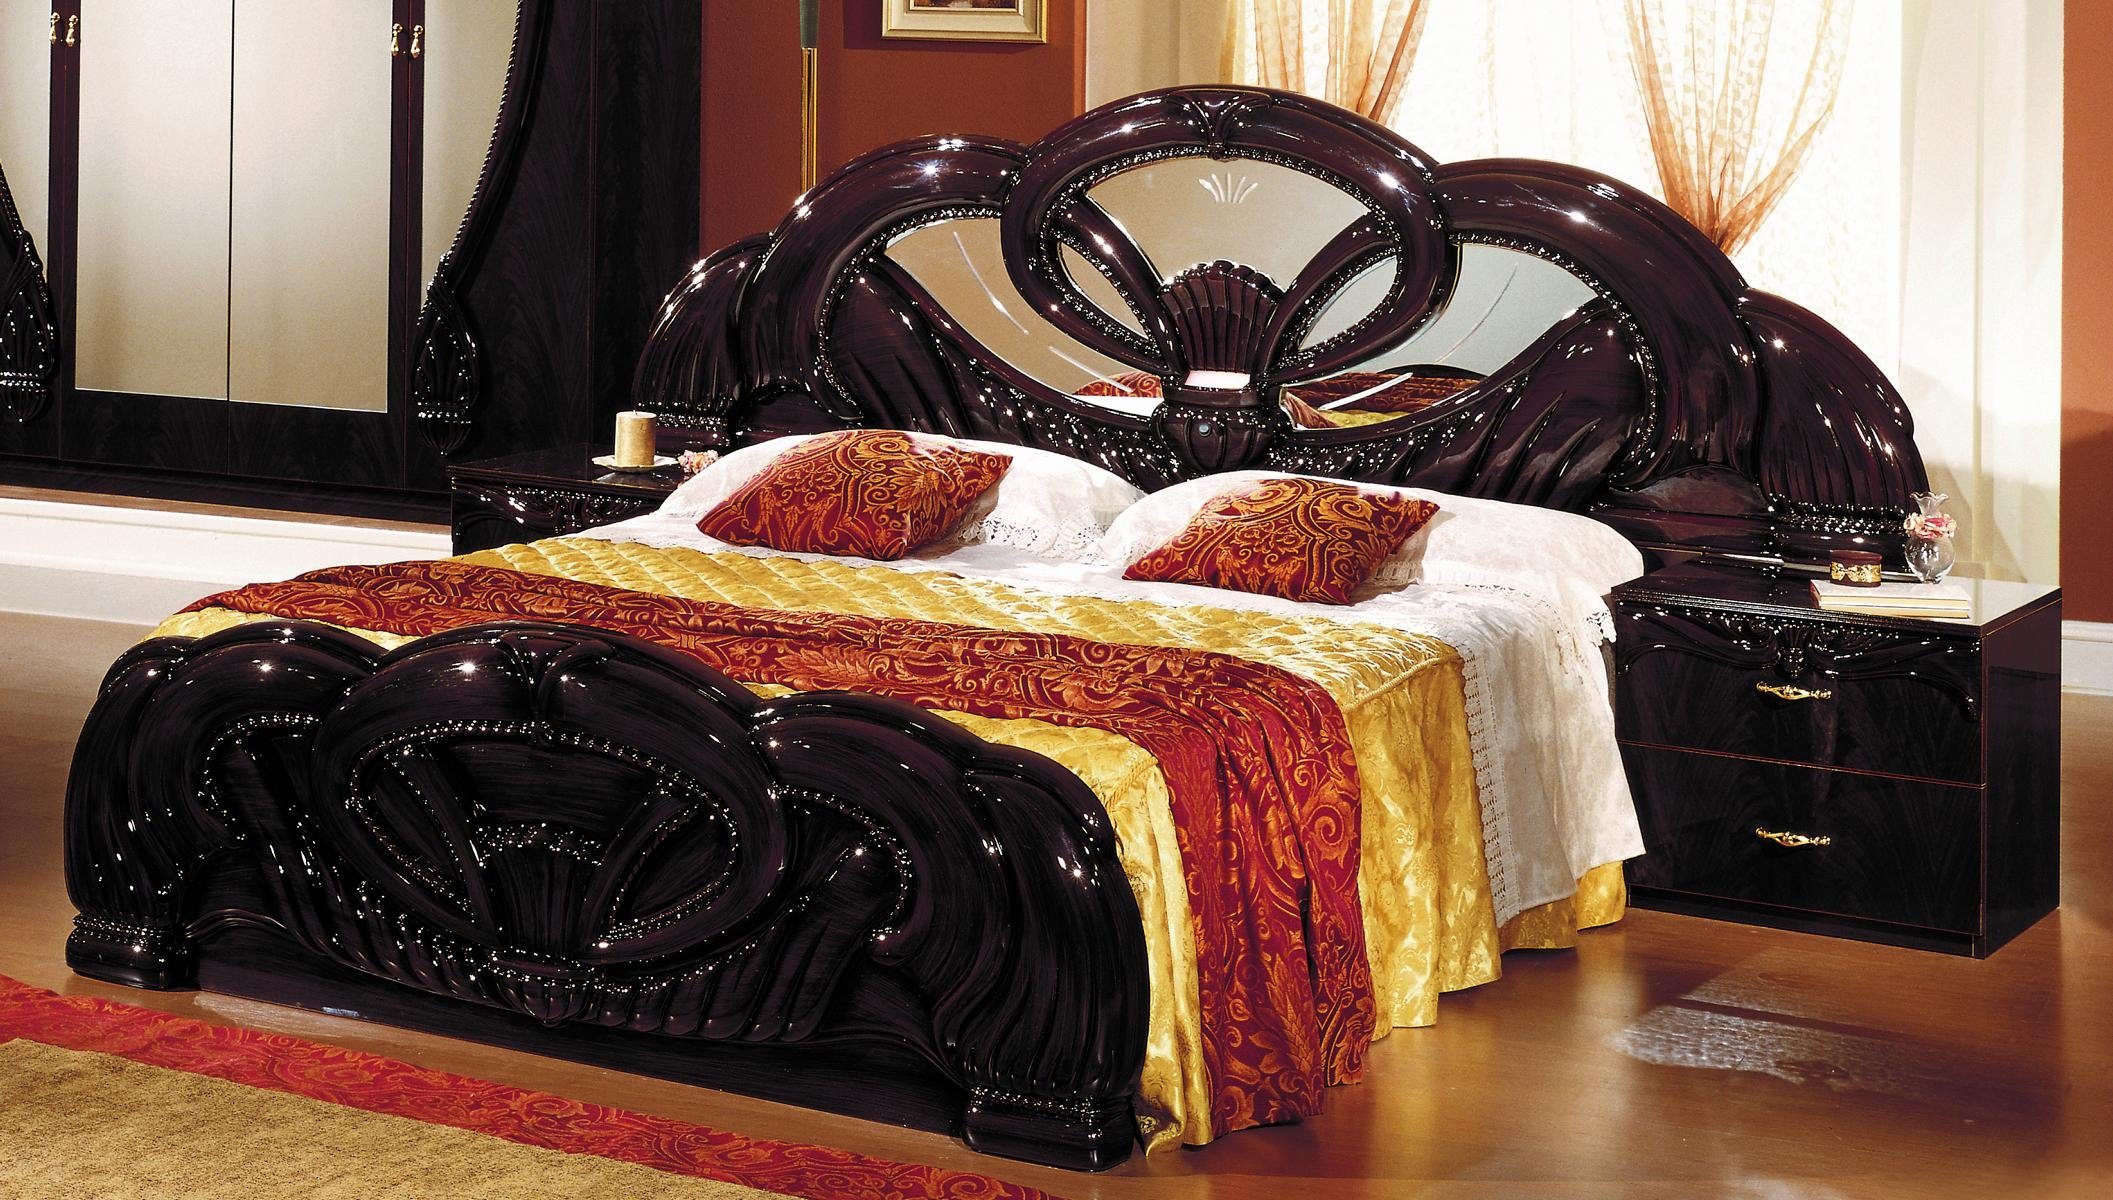 JVmoebel Bett Exclusiv Bett Design Polster Betten Doppel Betten Holz Italienische